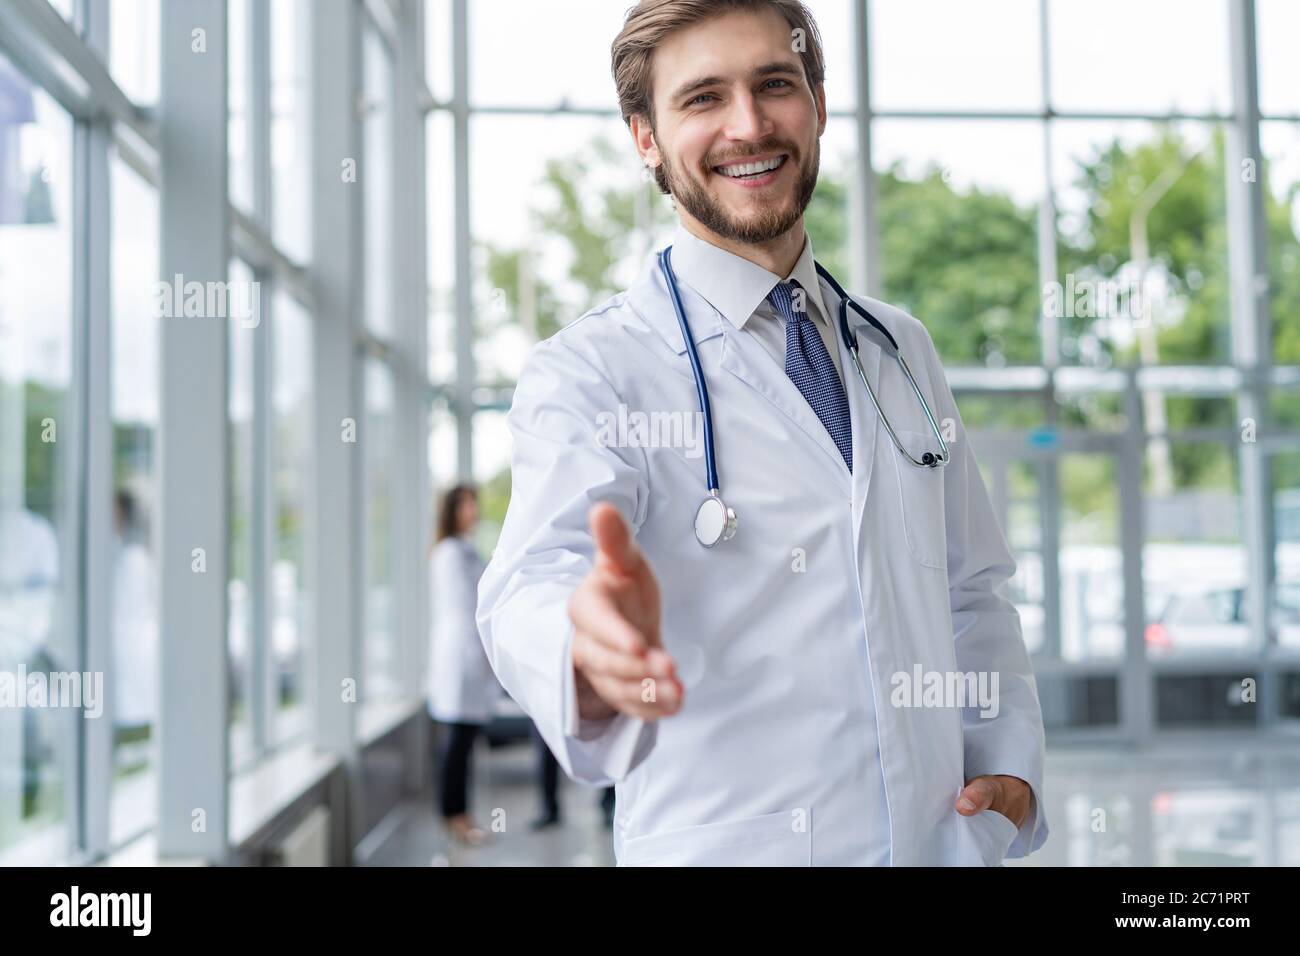 giovane medico che accoglie nel suo ufficio. medico uomo sorriso, tenere mano gesto di benvenuto con stetoscopio. Foto Stock